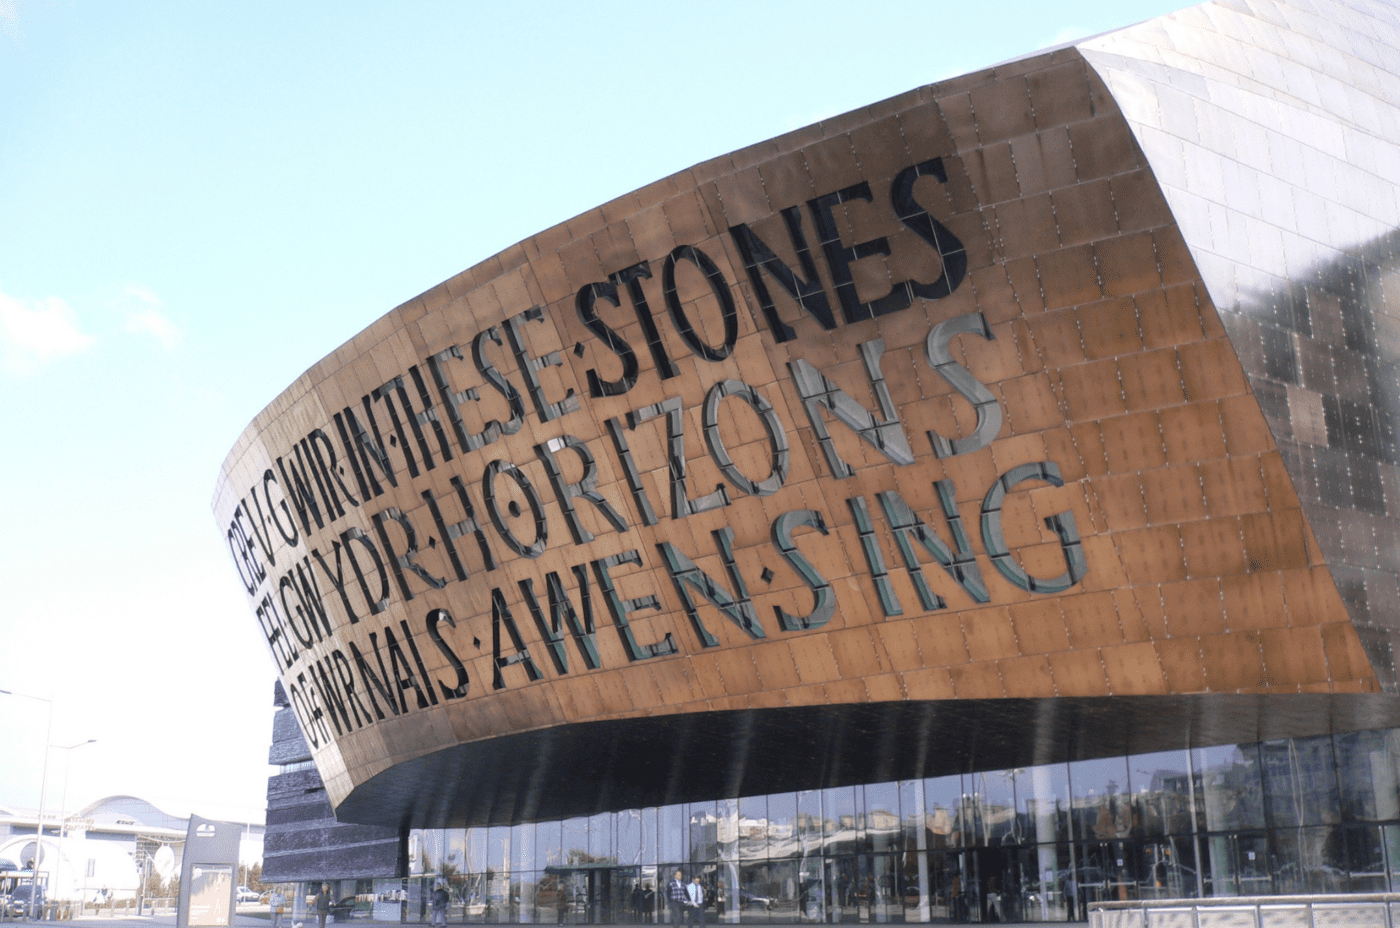 The Millennium Centre in Cardiff